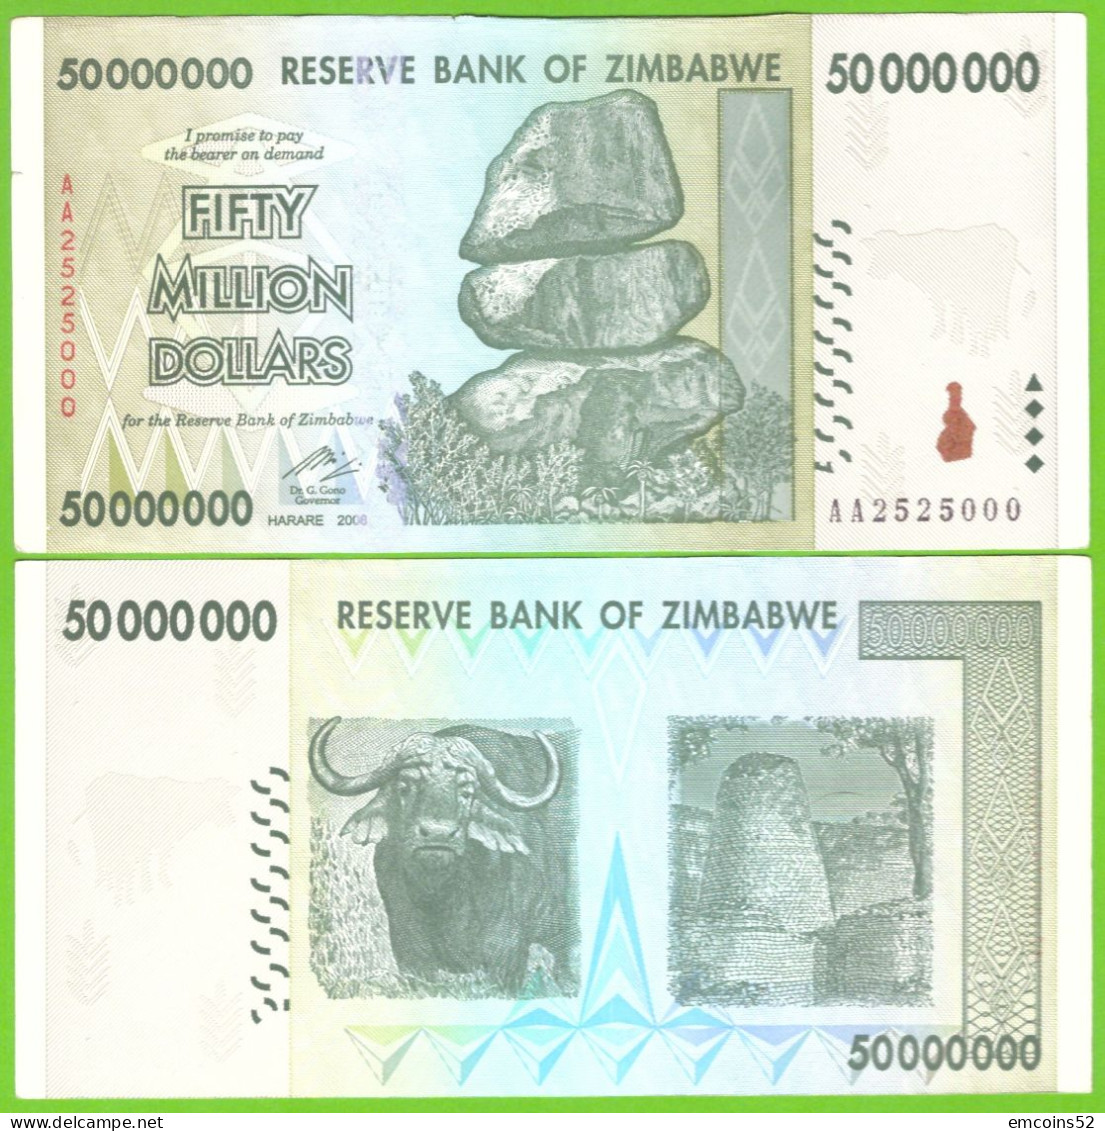 ZIMBABWE 50000000 DOLLARS 2008  P-79 XF - Simbabwe